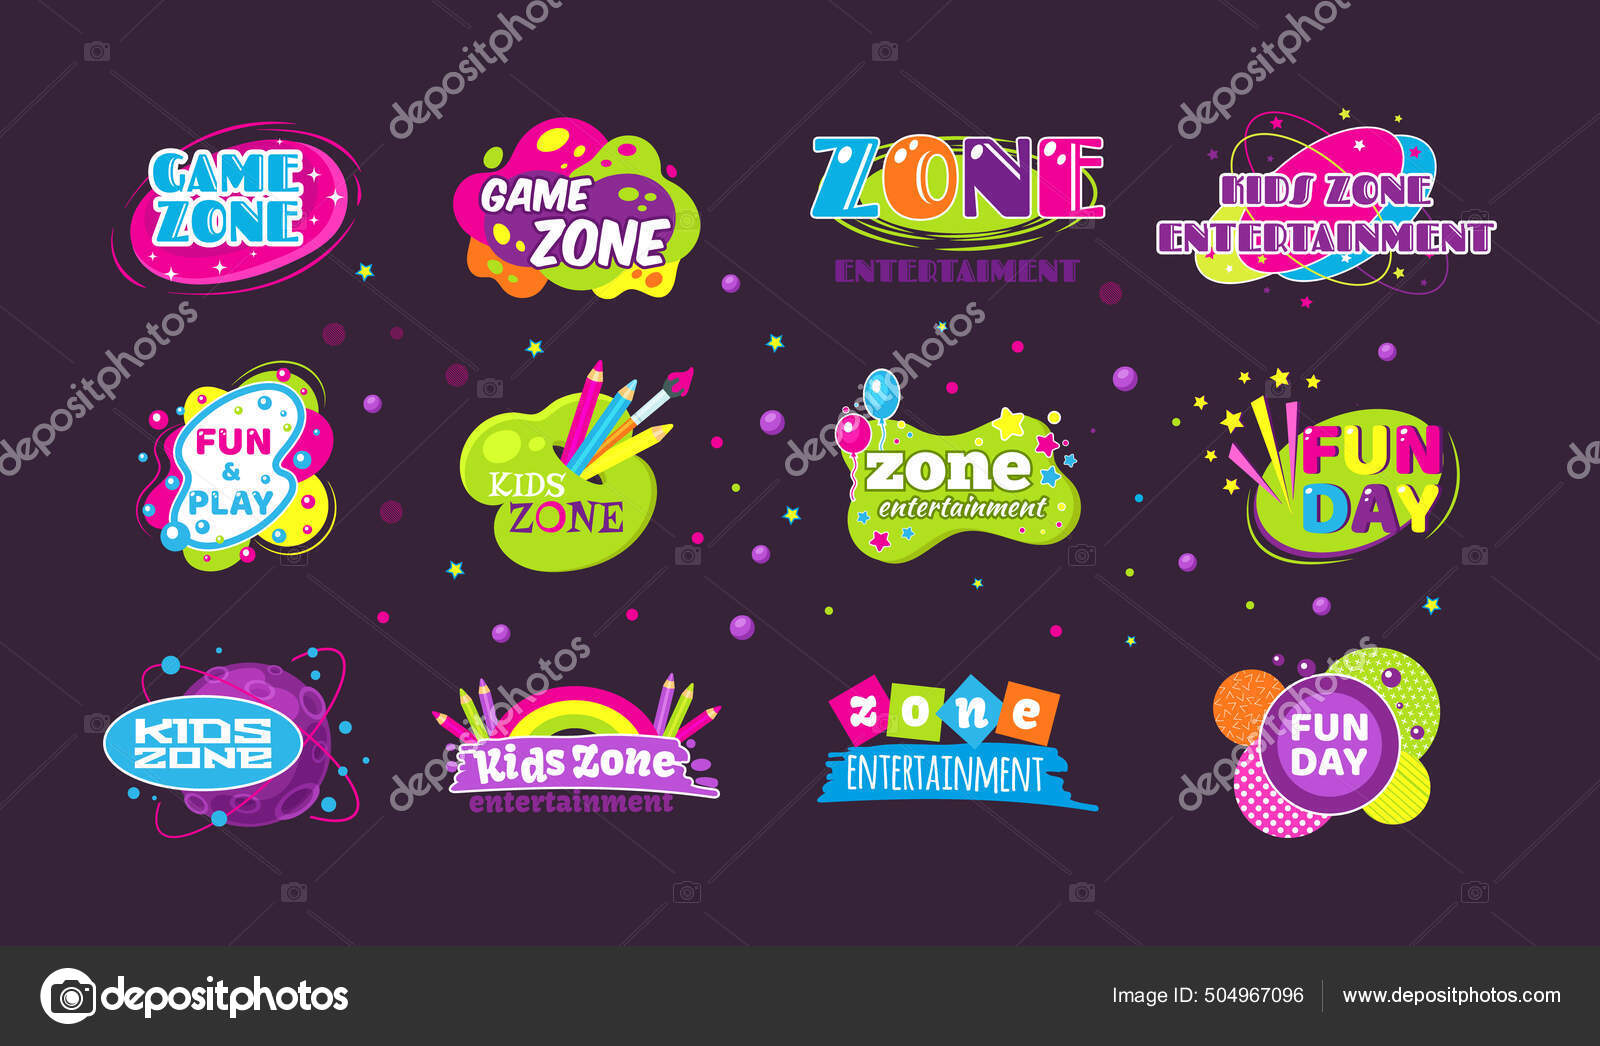 Cartaz de zona de jogo infantil de desenho animado adesivo de zona